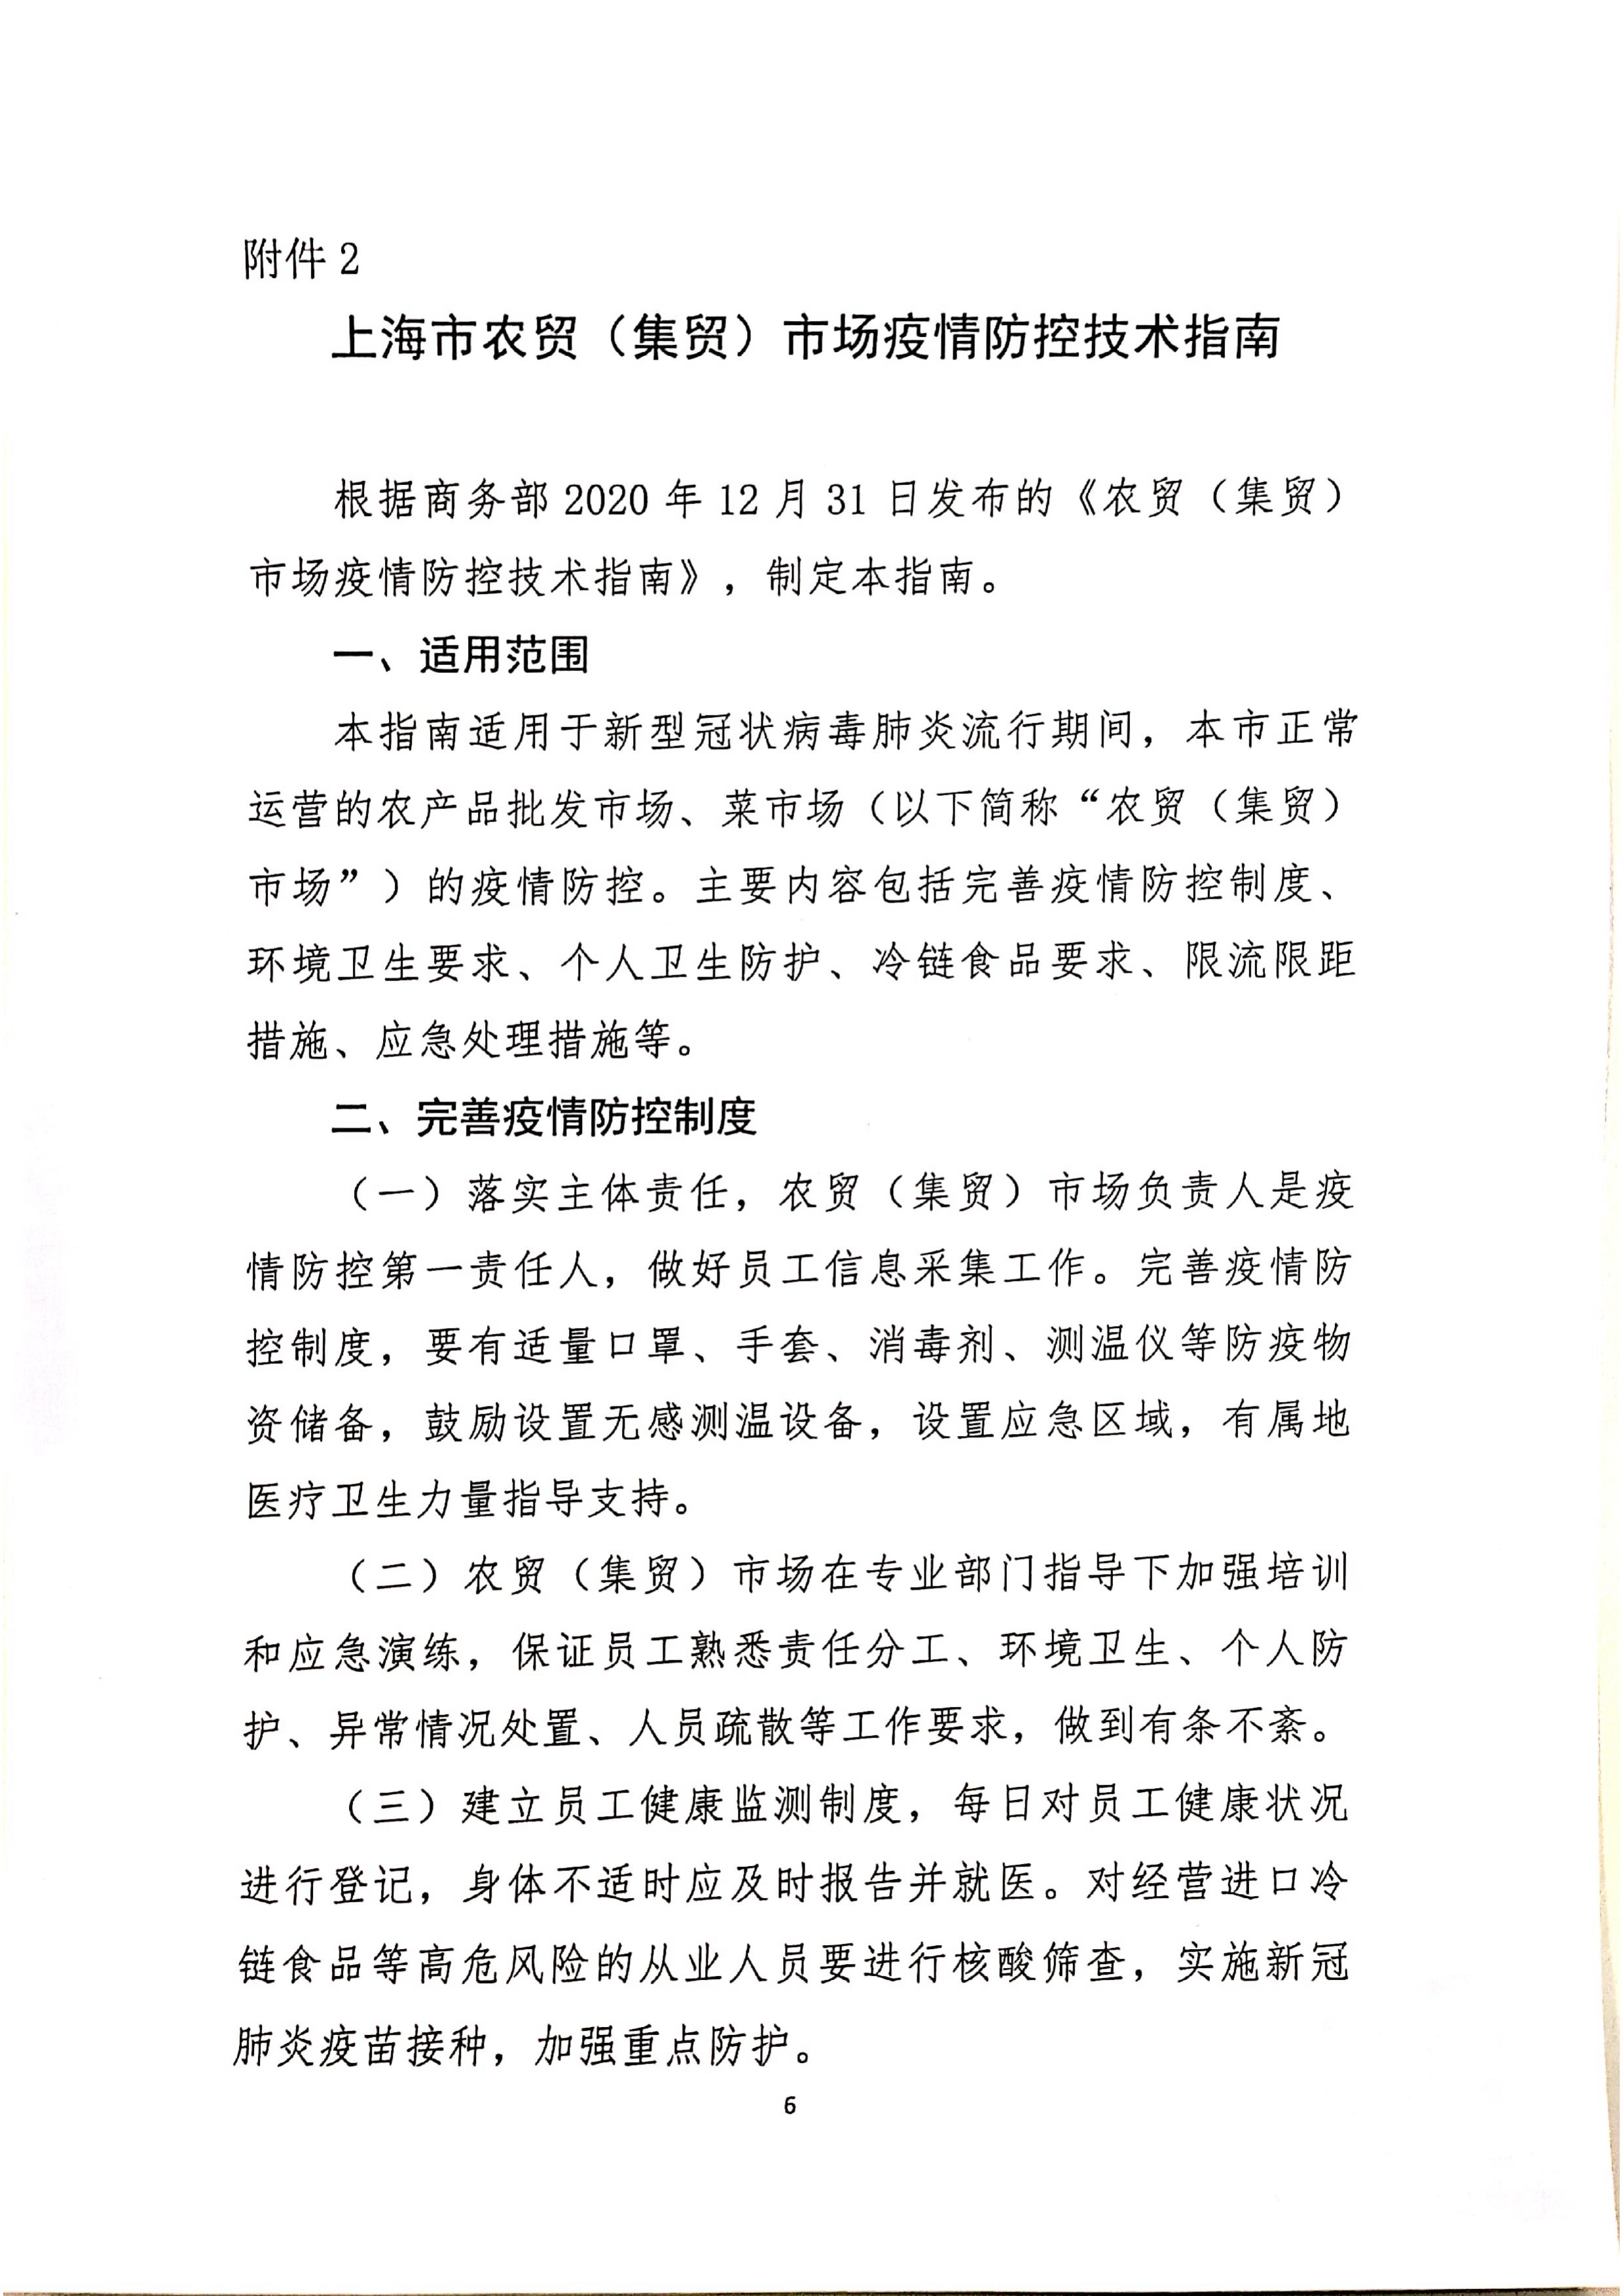 发文4号-关于印发《上海市商场、超市疫情防控技术指南》等4个指南的通知_06.jpg